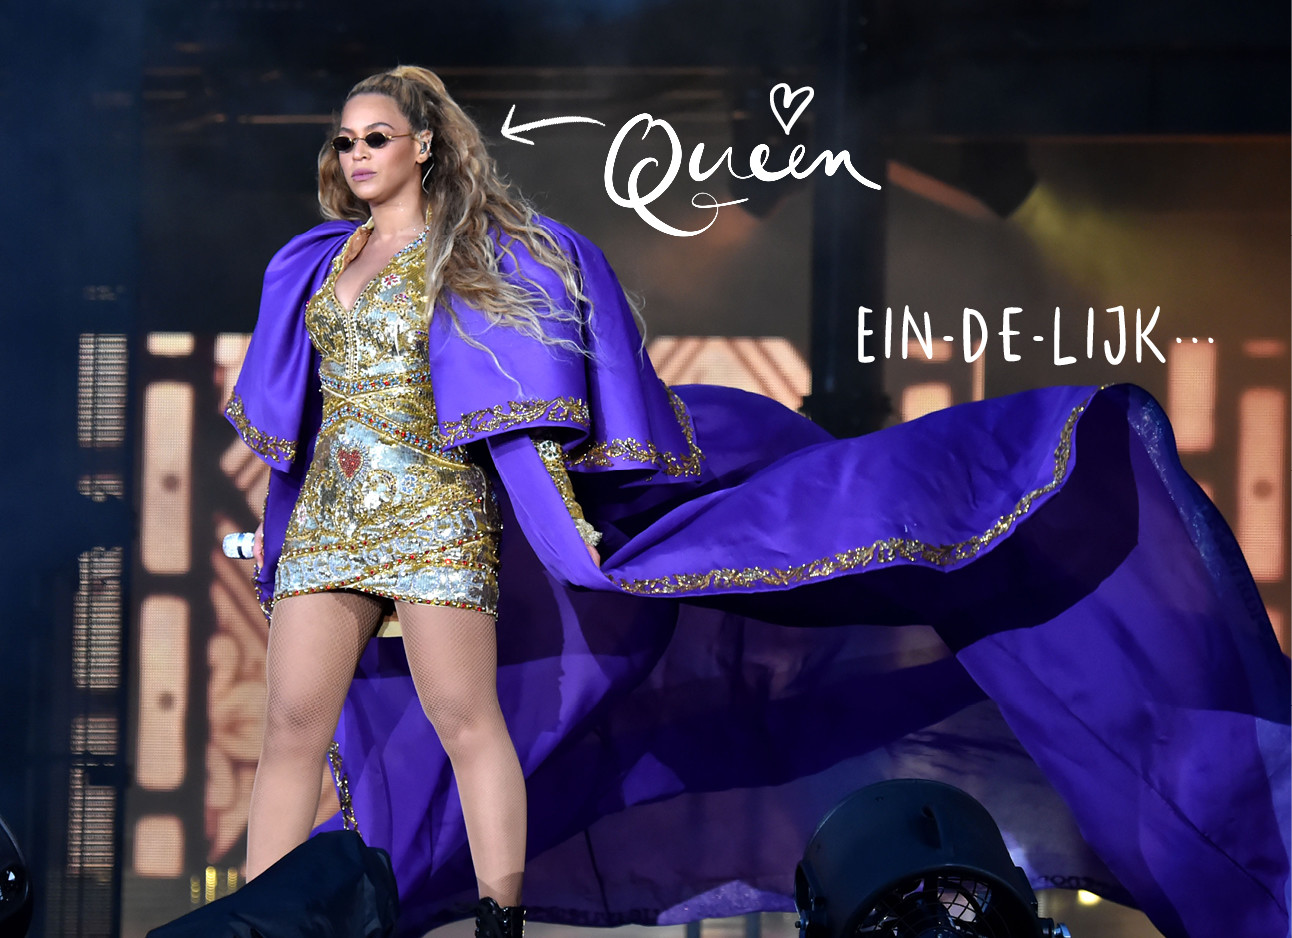 queen b, beyonce aan het performen met een gouden jurk en paarse mantel, zonnebril